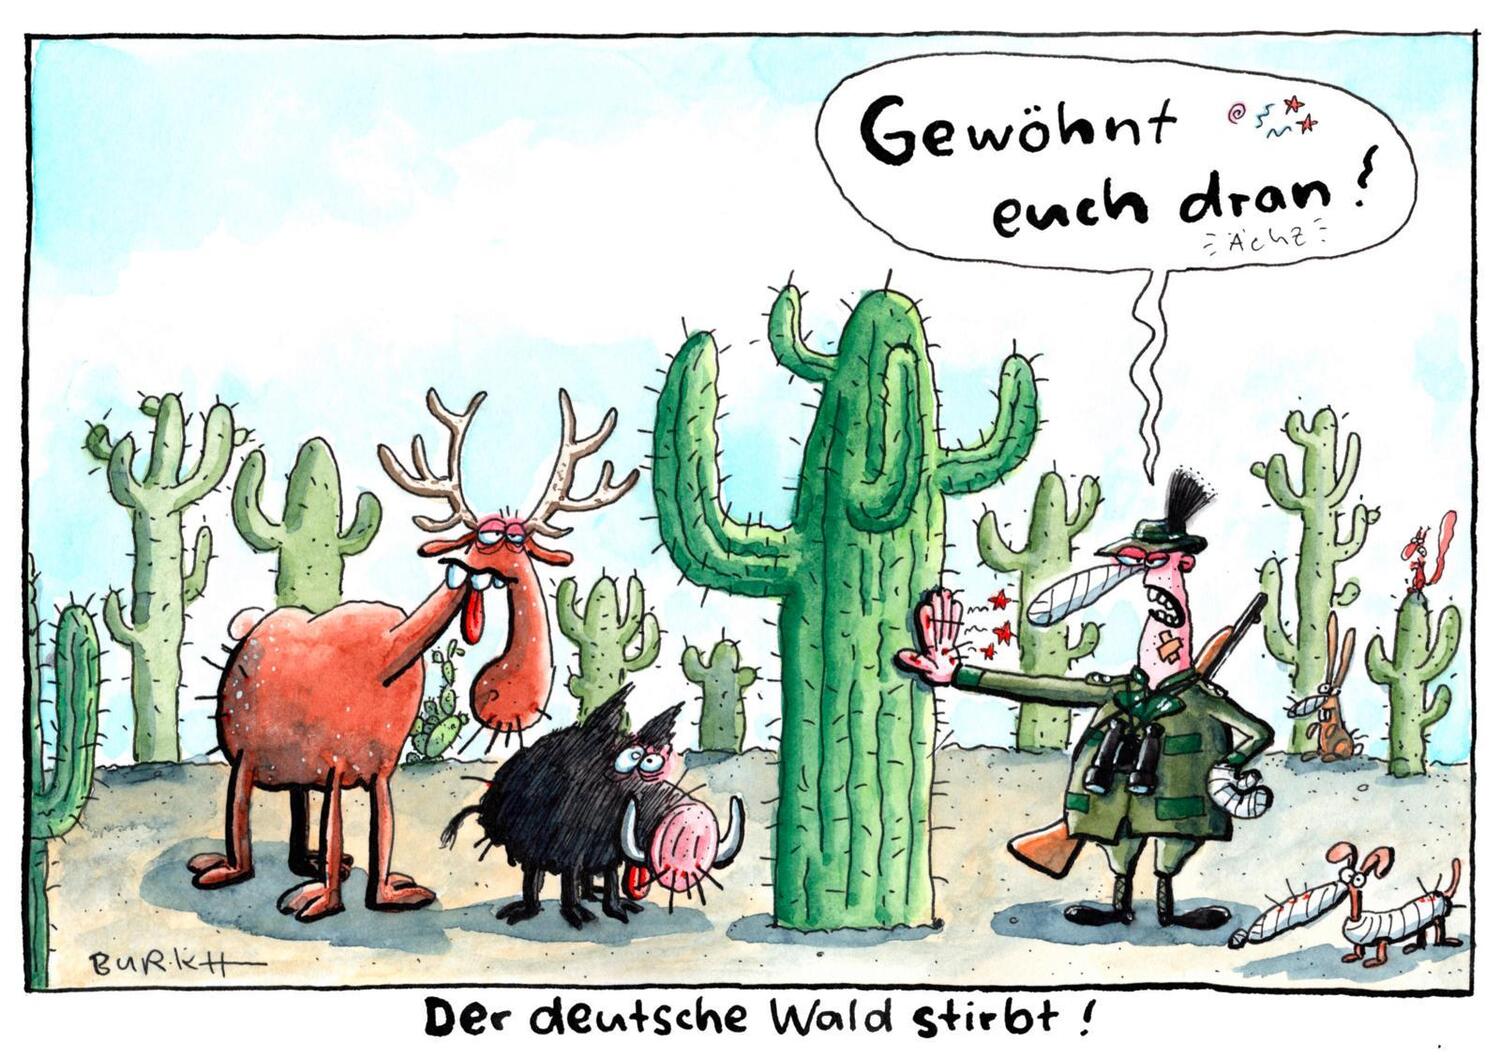 Bild: 9783830336662 | Scheiß aufs Klima! | Cartoons zur Klimakrise | Saskia Wagner (u. a.)